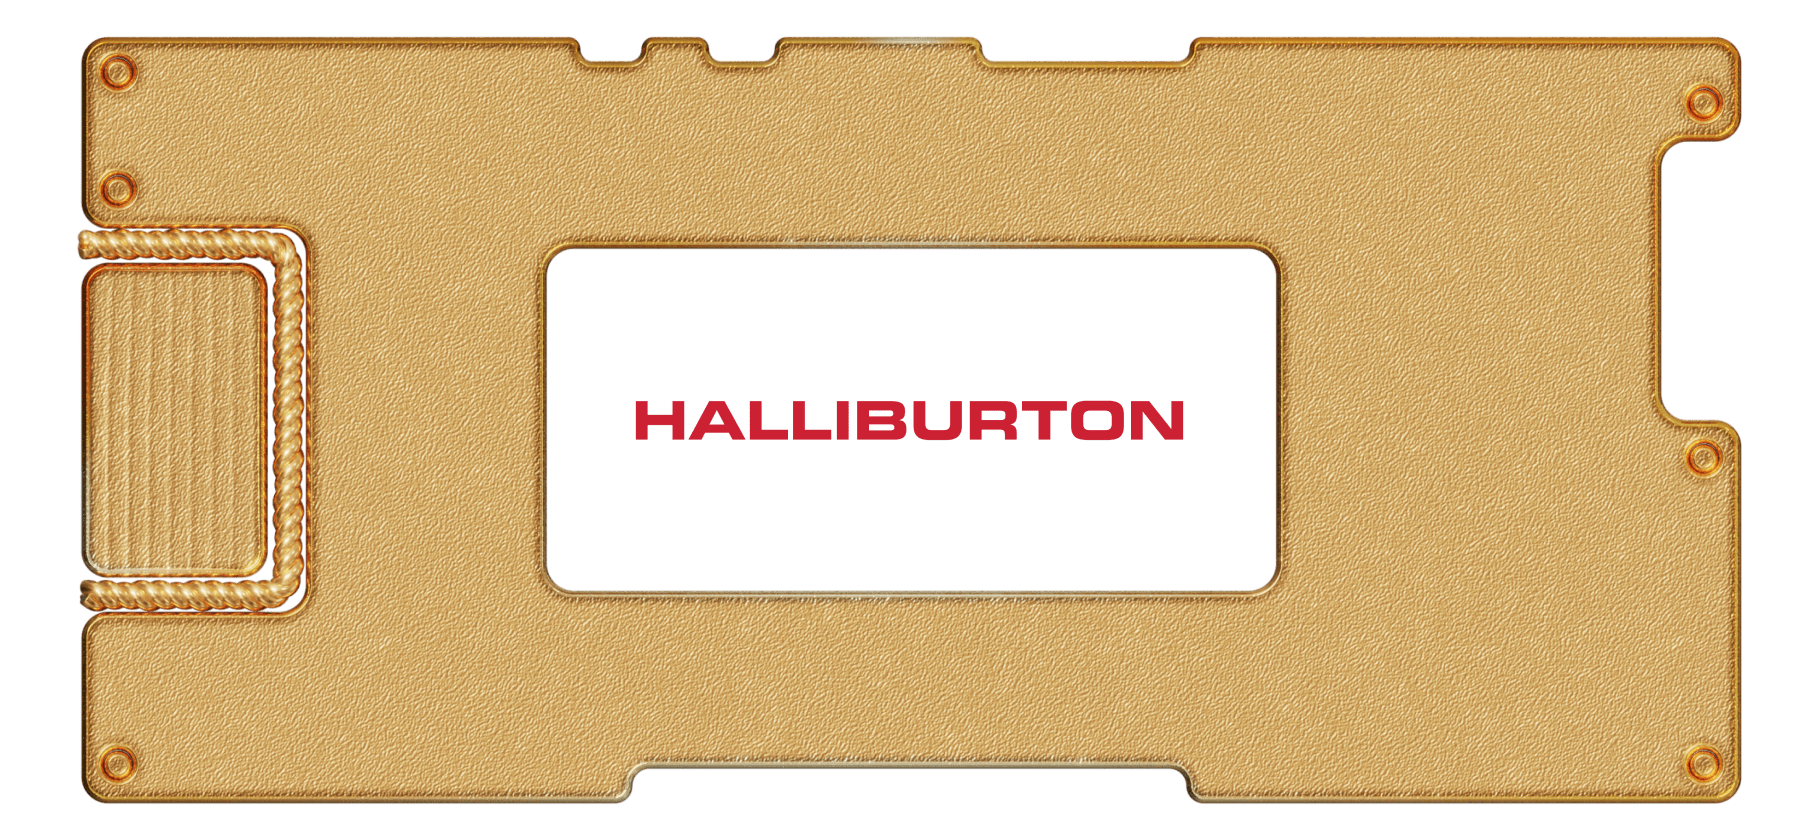 Инвестидея: Halliburton, потому что надо подкачать